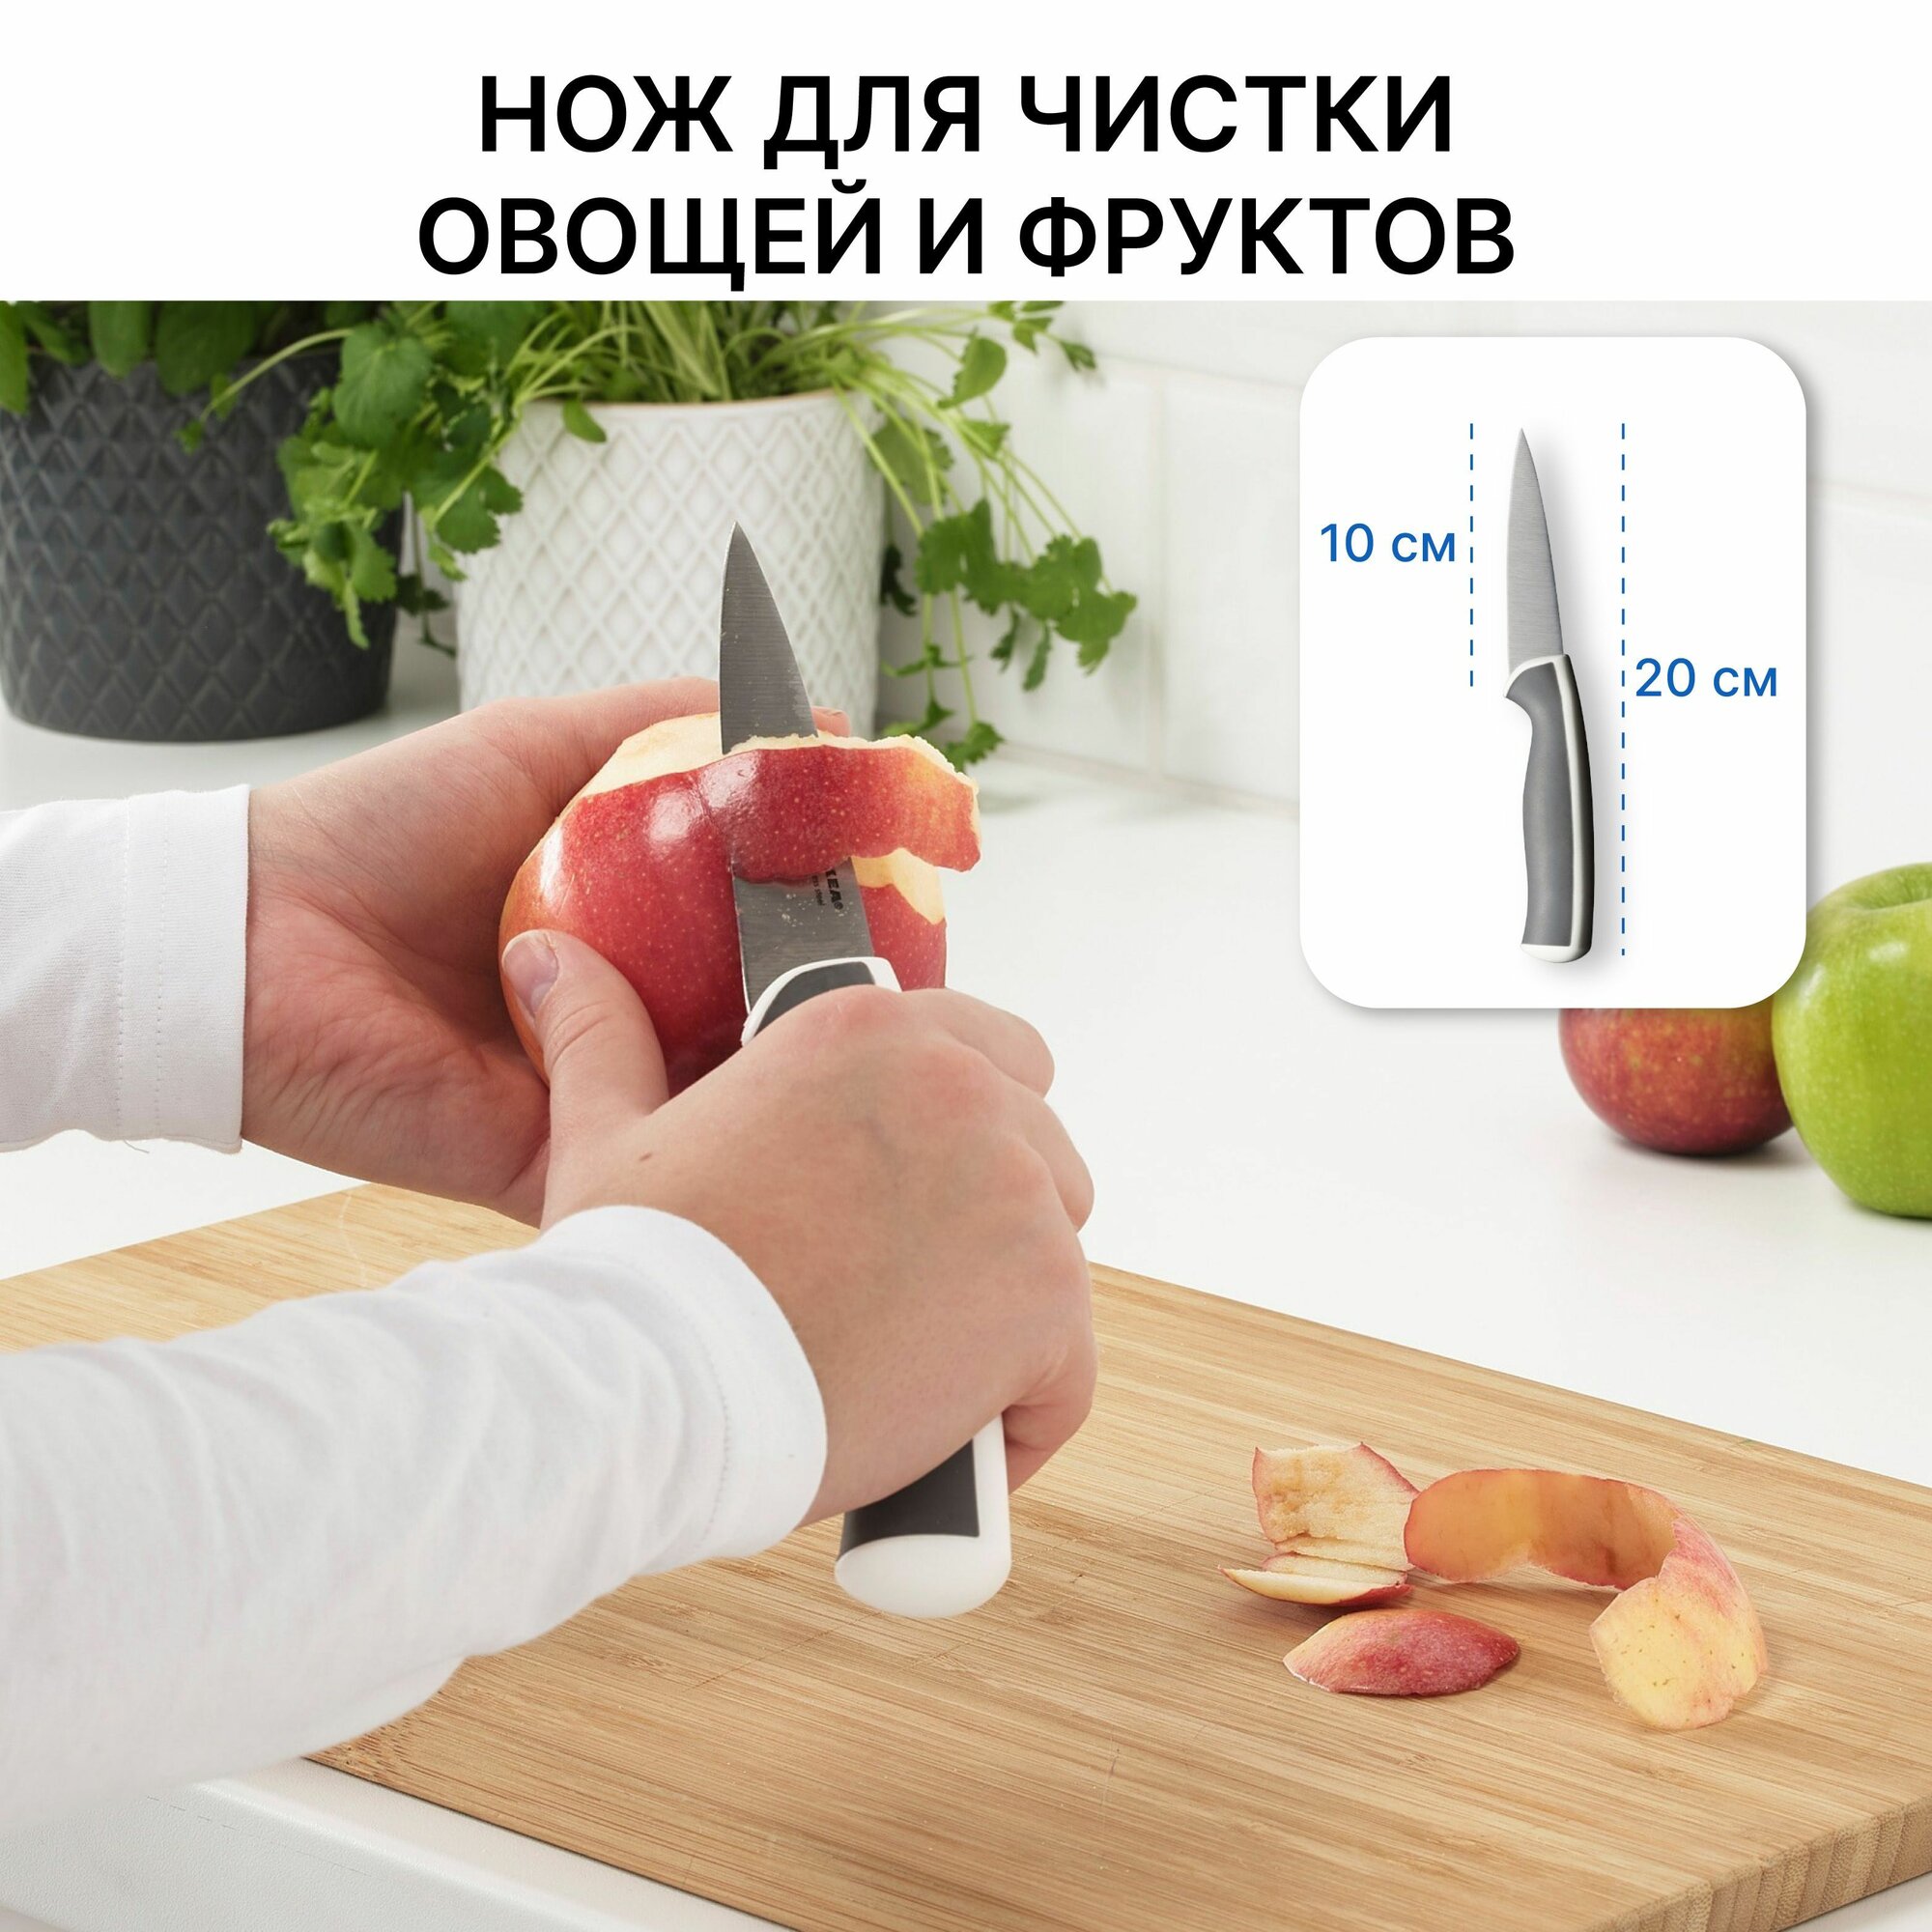 Набор ножей кухонных IKEA андлиг 3 шт из нержавеющей стали (поварской, для хлеба, овощей и фруктов) на кухню